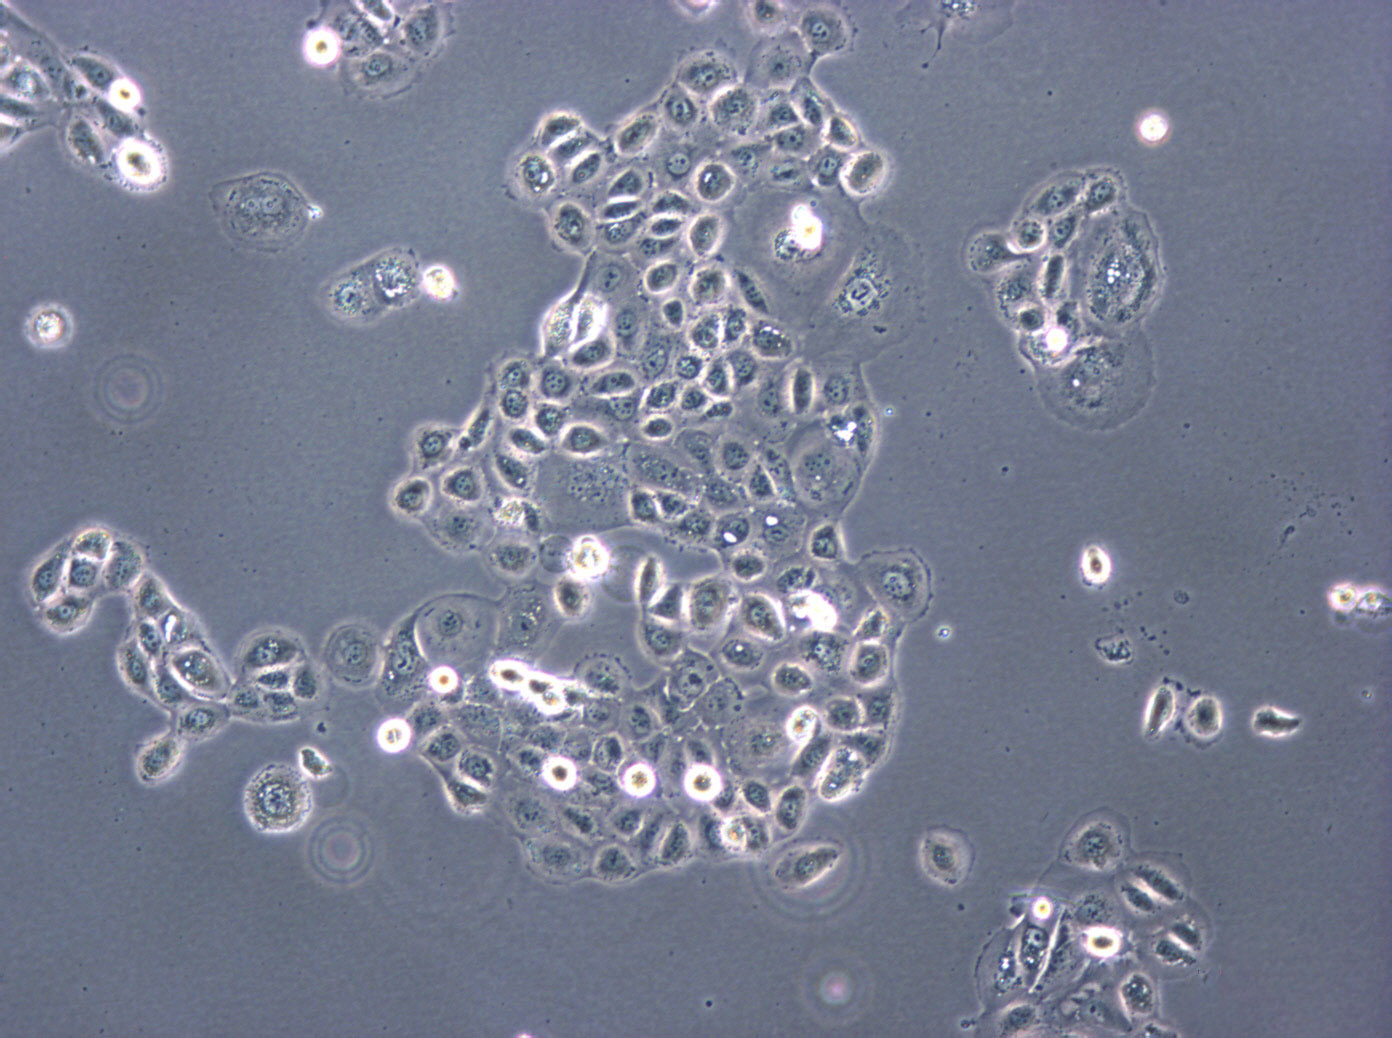 Vero 76 epithelioid cells非洲绿猴肾细胞系,Vero 76 epithelioid cells